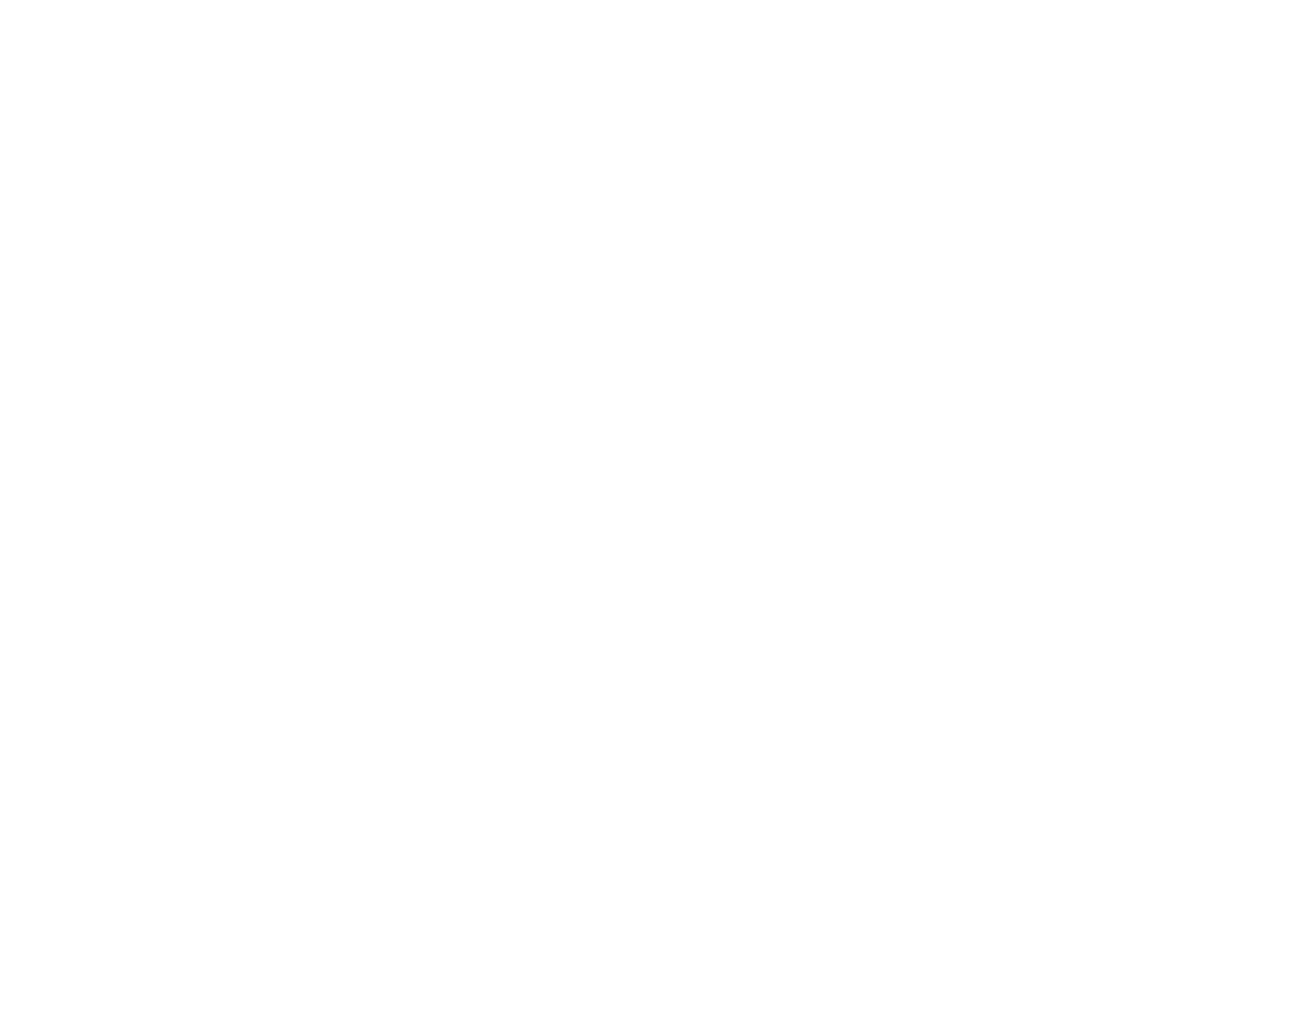 Le Champignon de Bruxelles